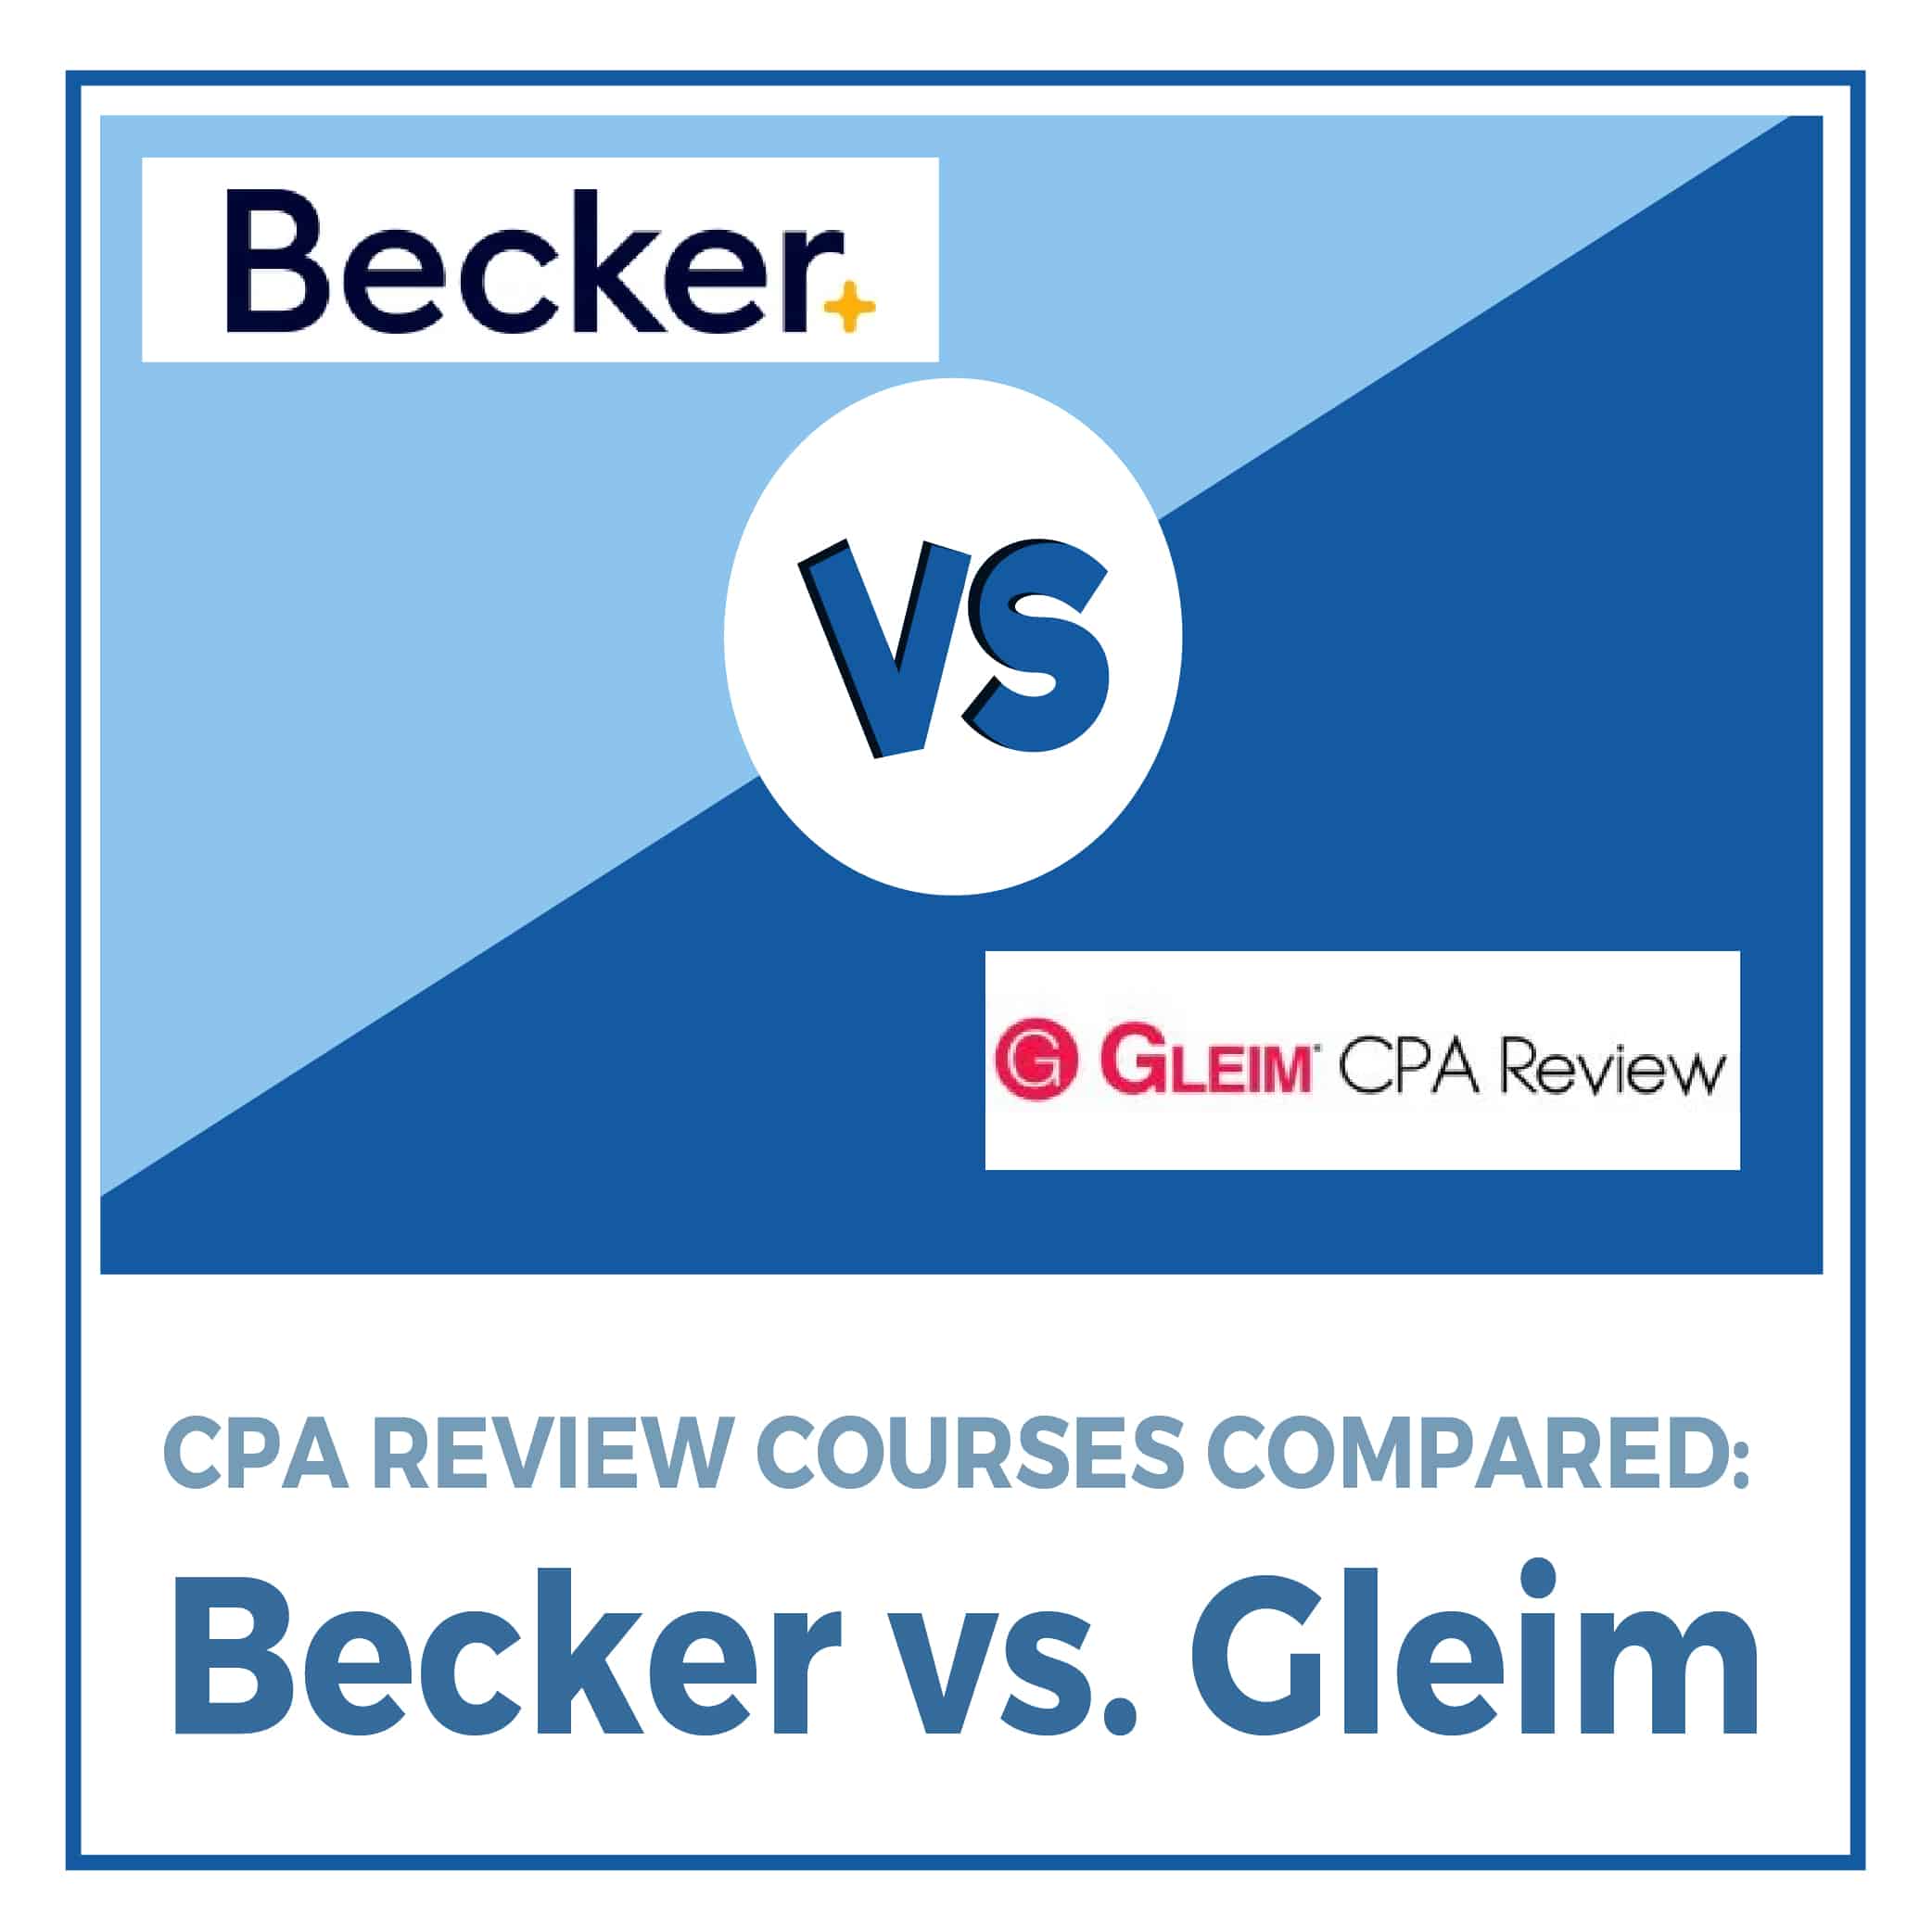 becker cpa online classes